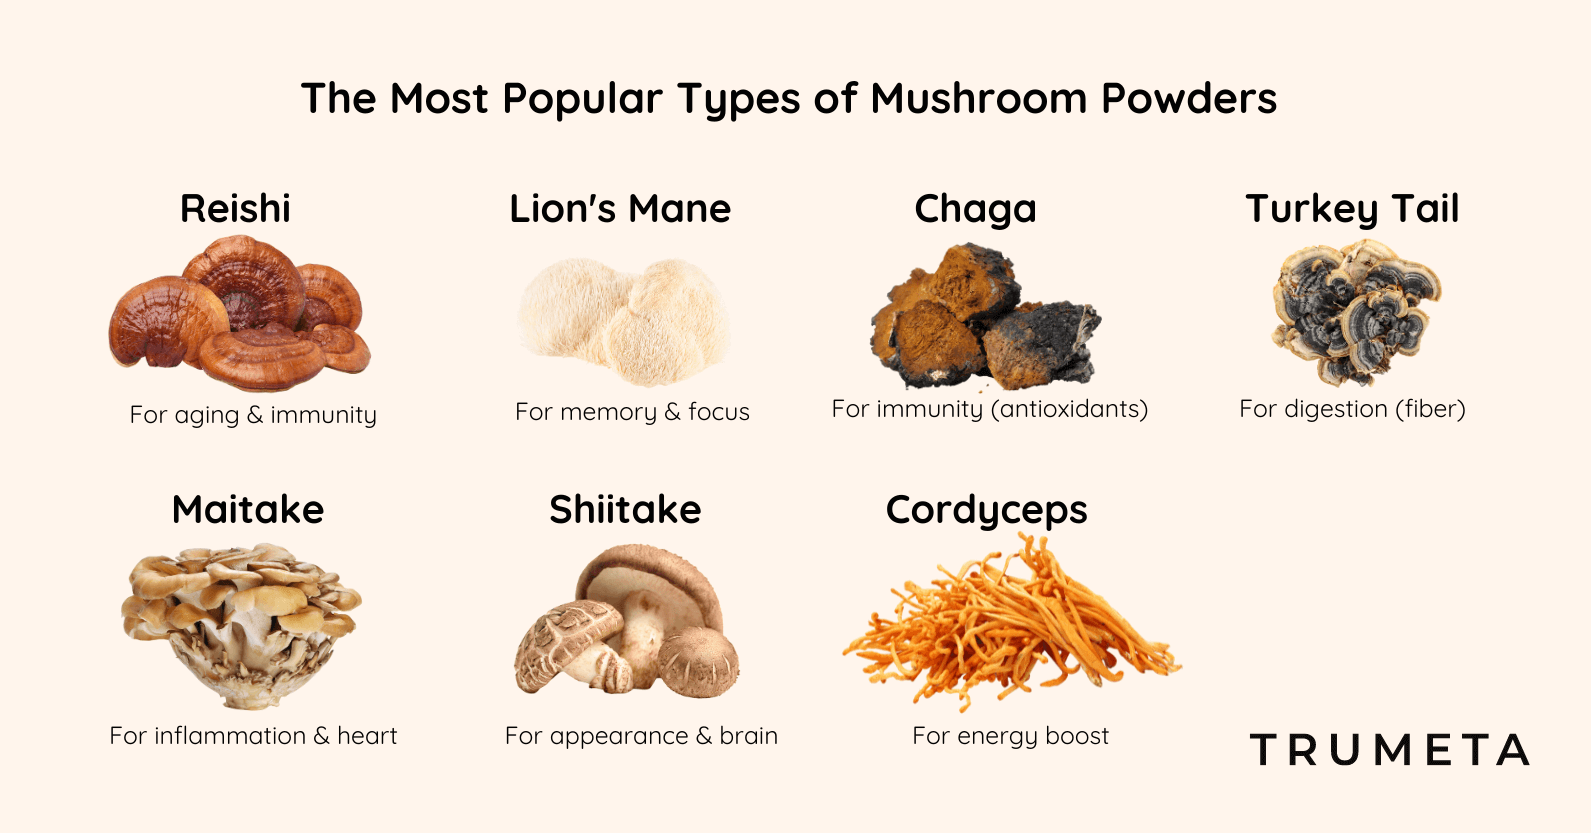 The Most Popular Types of Mushroom Powders - Reishi, Lion's Mane, Chaga, Turkey Tail, Maitake, Shiitake, Cordyceps